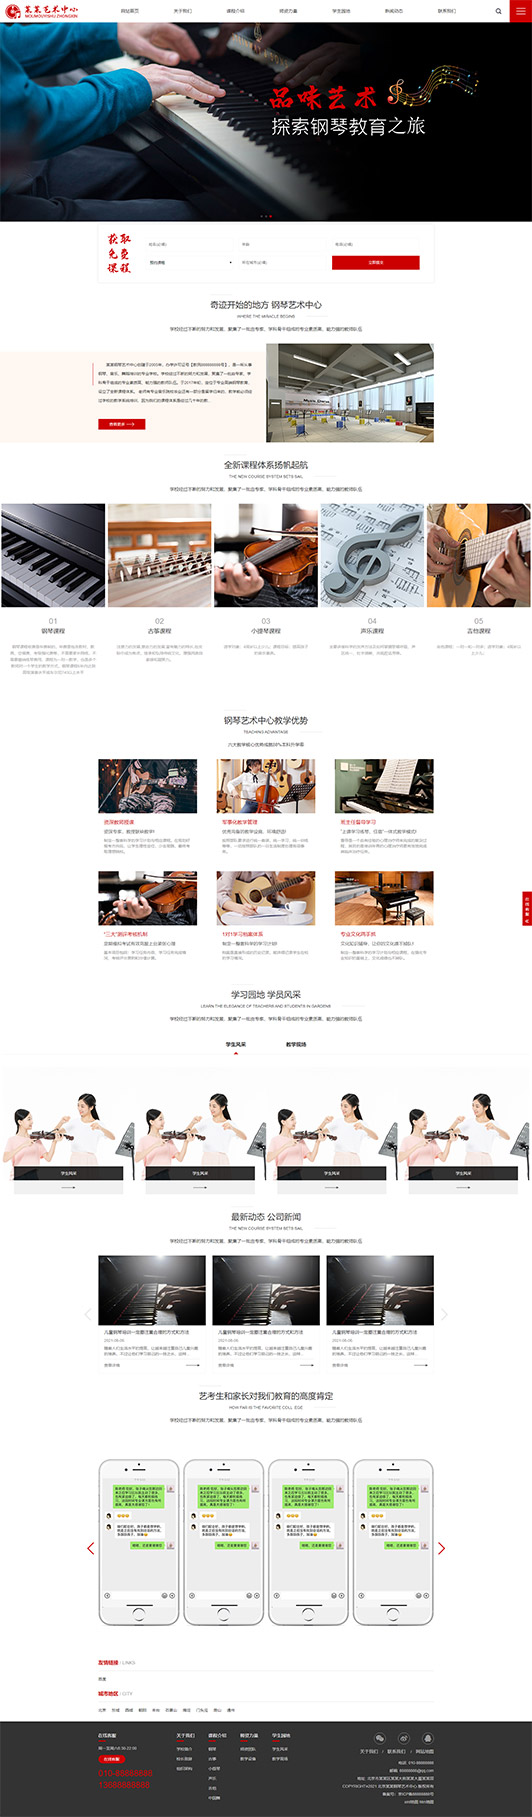 贵阳钢琴艺术培训公司响应式企业网站